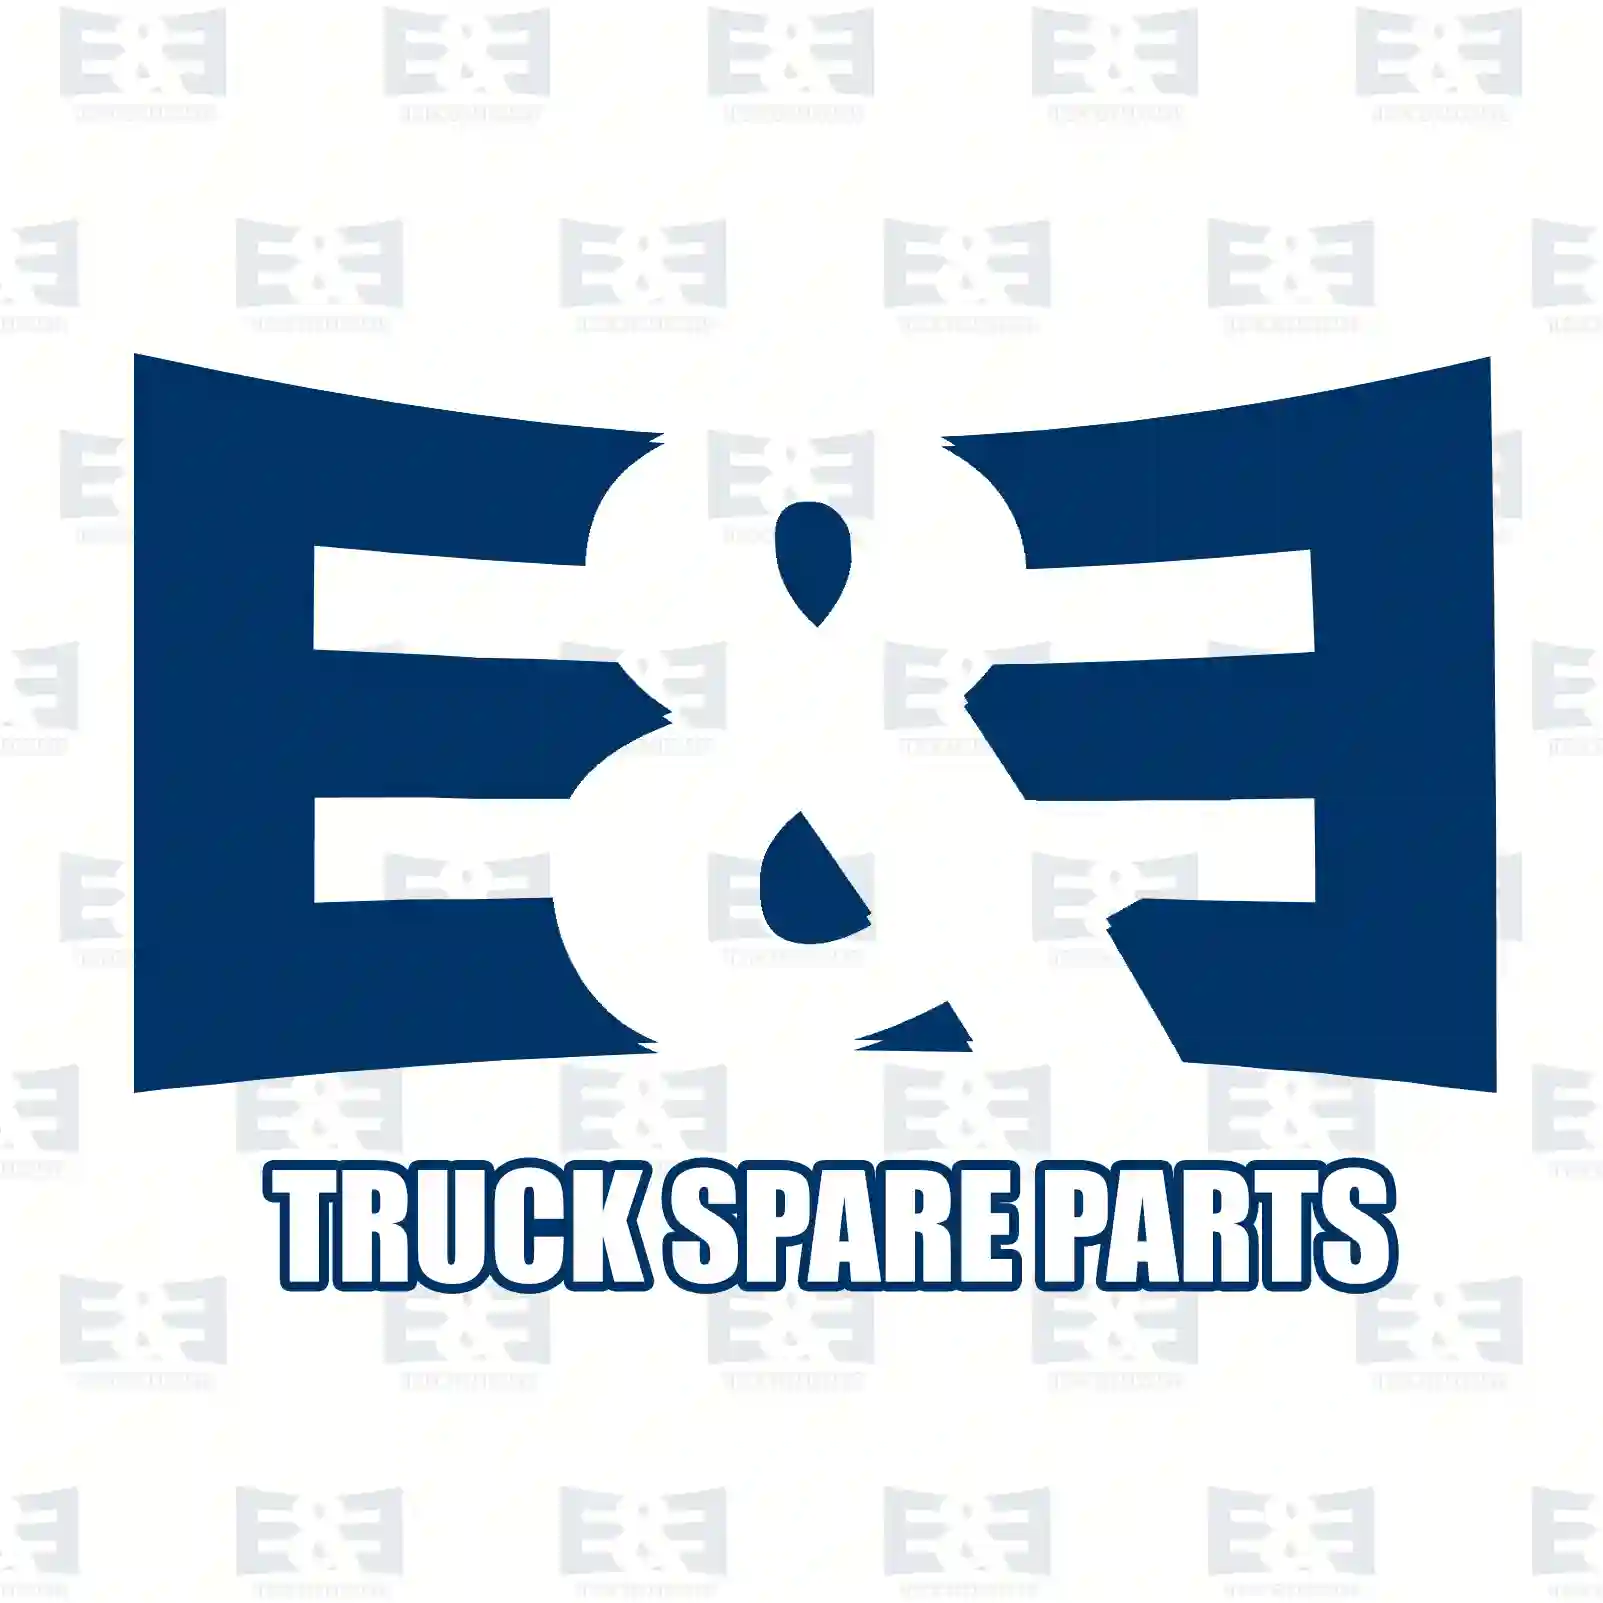 Switch, 2E2279496, 0005455209, 0005457909, 0005458309, 0015451109, 0015452709, 0015455309, ZG20968-0008 ||  2E2279496 E&E Truck Spare Parts | Truck Spare Parts, Auotomotive Spare Parts Switch, 2E2279496, 0005455209, 0005457909, 0005458309, 0015451109, 0015452709, 0015455309, ZG20968-0008 ||  2E2279496 E&E Truck Spare Parts | Truck Spare Parts, Auotomotive Spare Parts